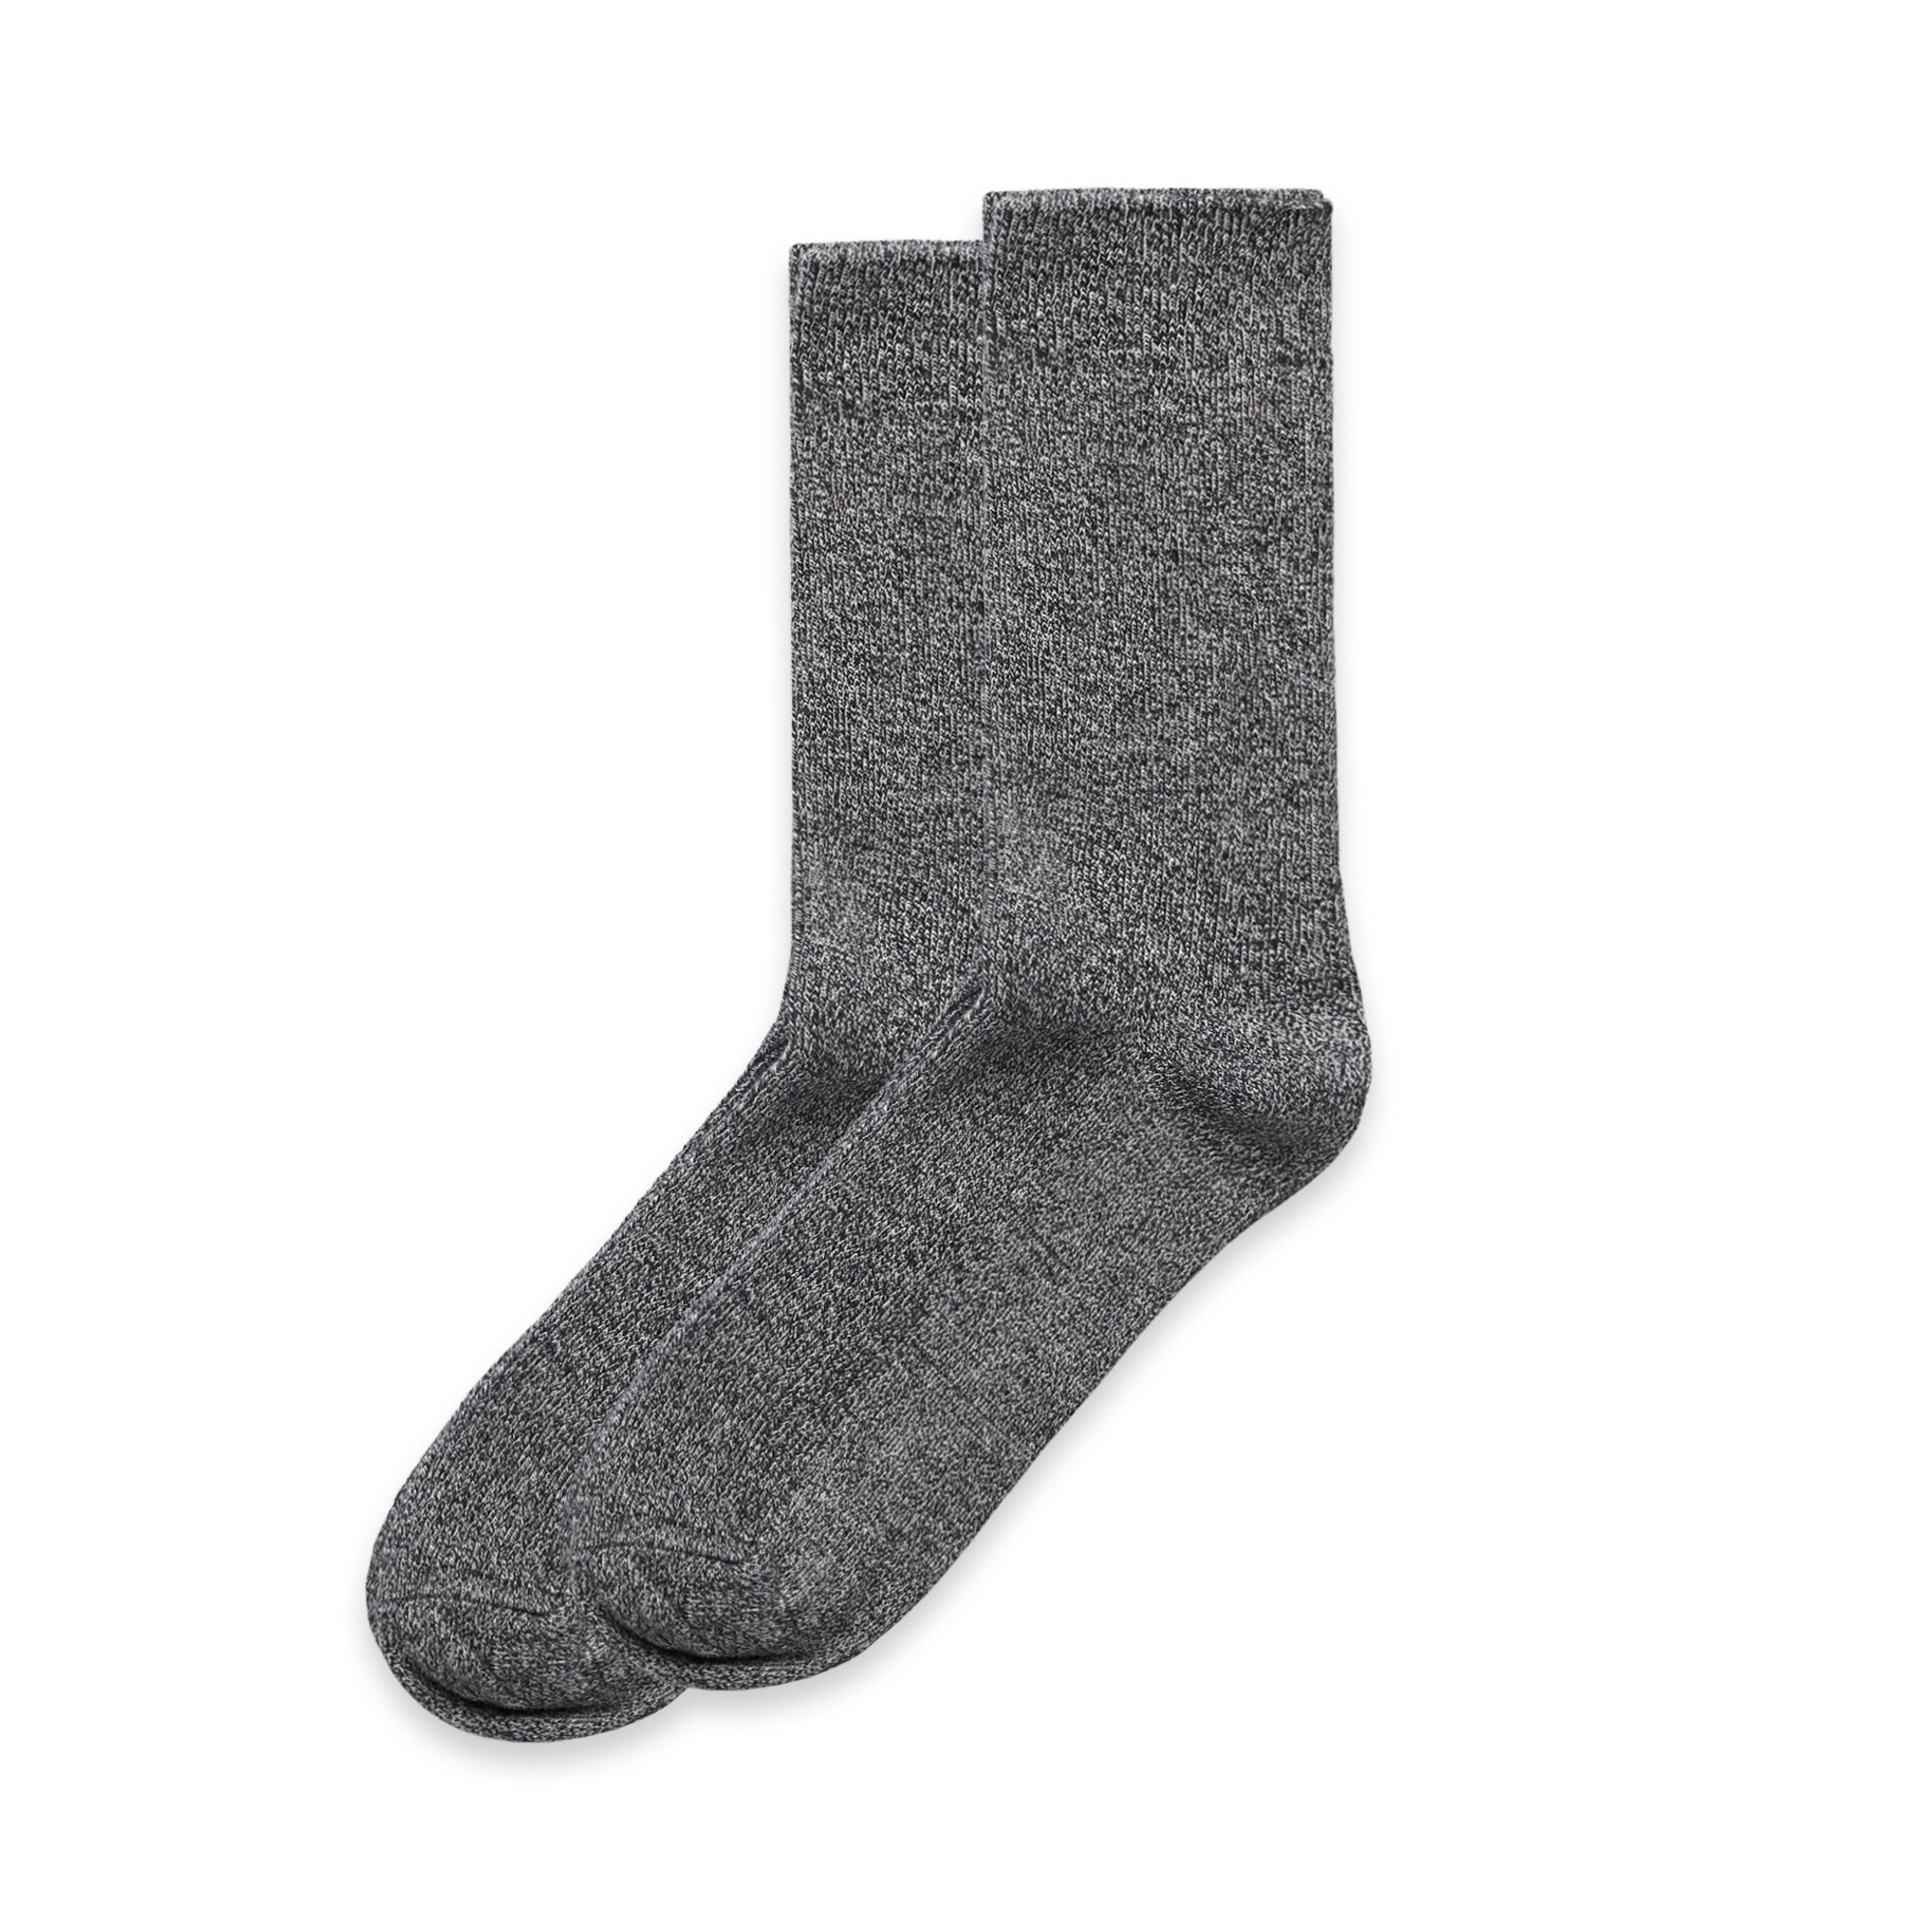 Marle Socks (2 Pairs) - 1205 - AS Colour AU